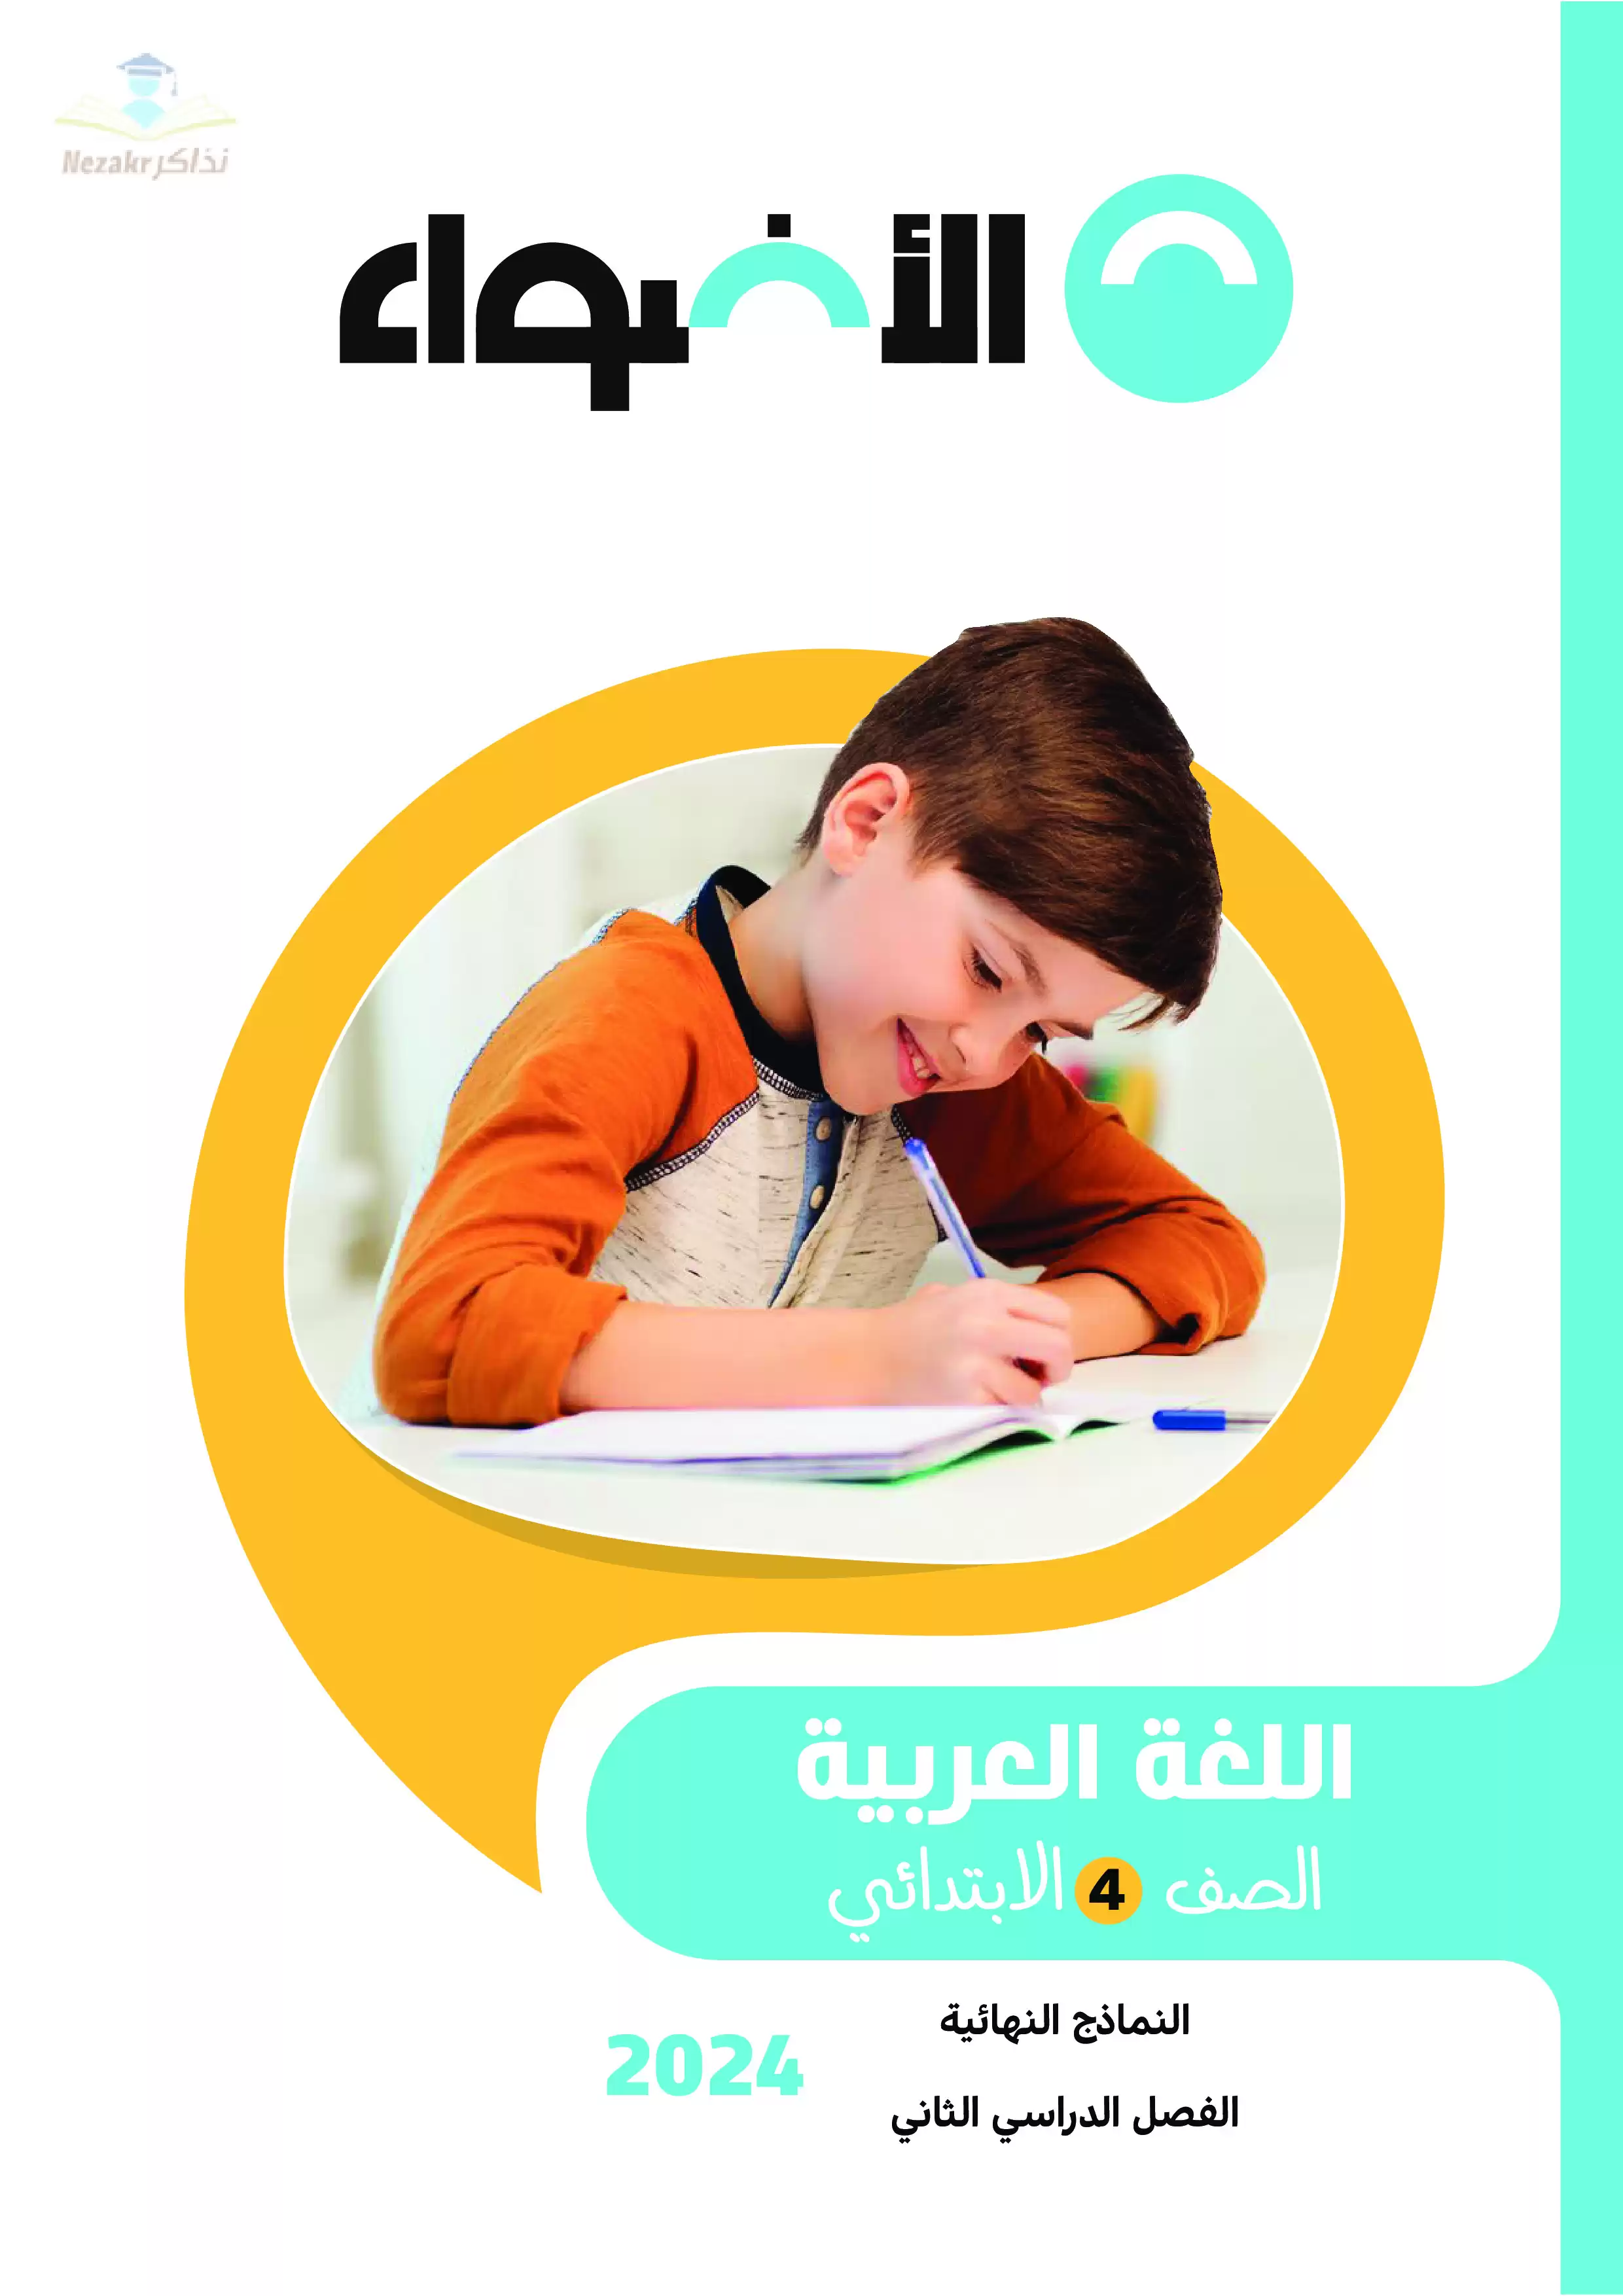 مراجعة الأضواء النهائية في اللغة العربية للصف الرابع الابتدائي الفصل الدراسي الثاني